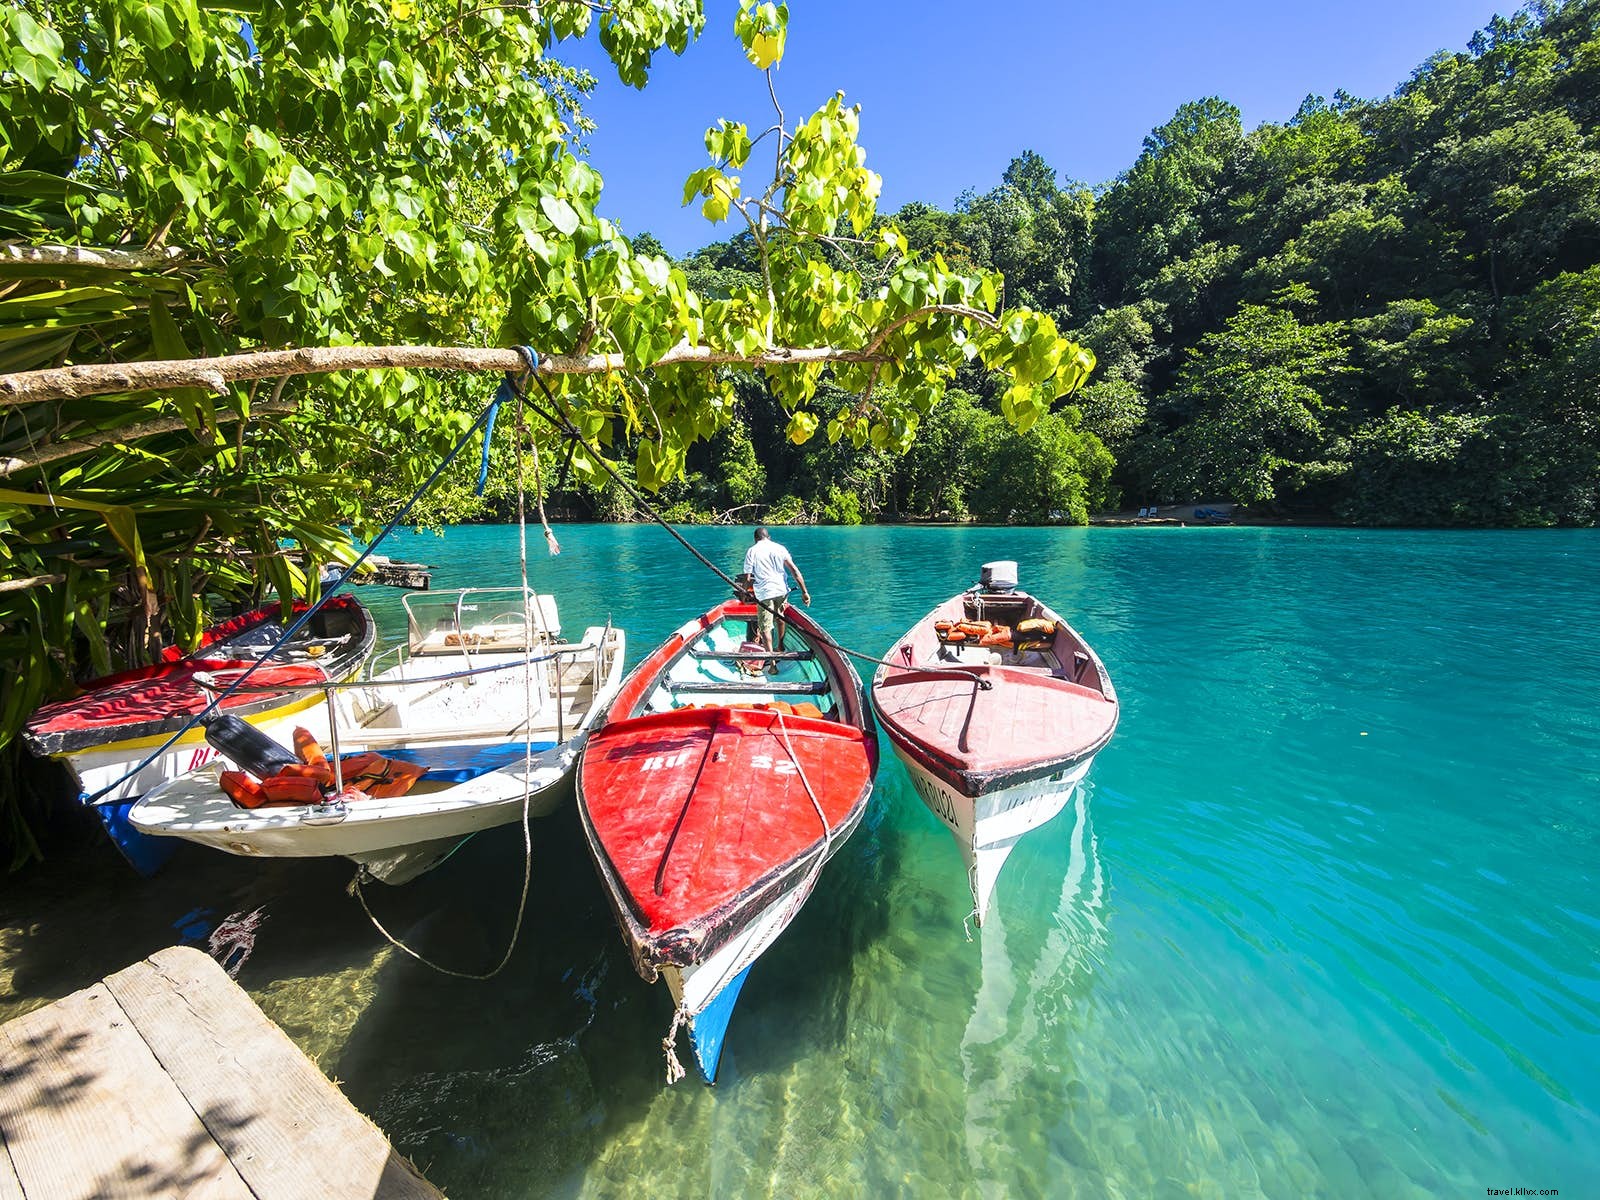 Les 10 meilleures expériences de voyage en Jamaïque 